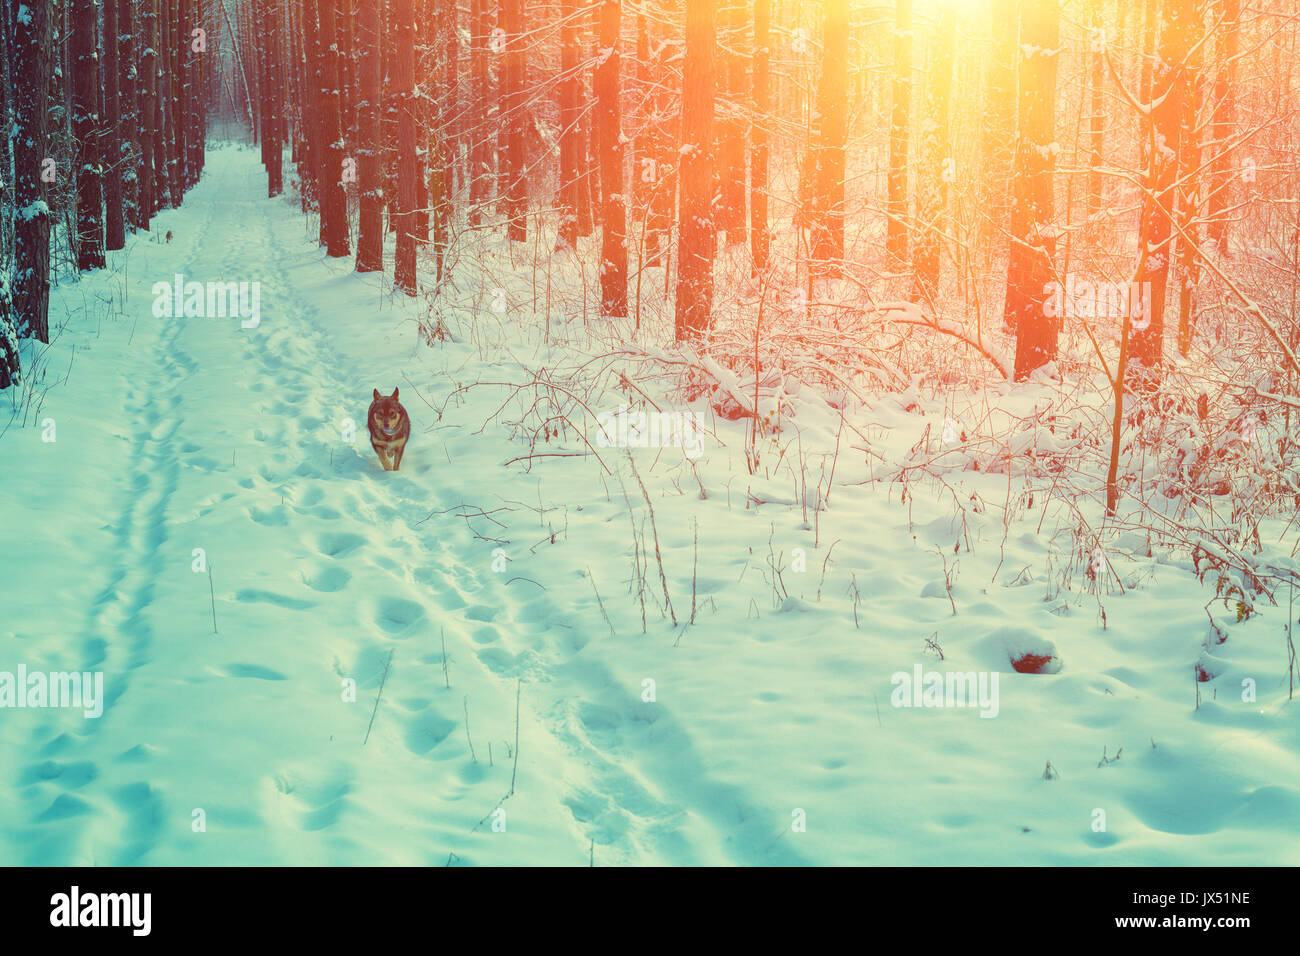 Un cane è in esecuzione lungo la strada in un bosco di pini inverno boschi innevati al tramonto Foto Stock